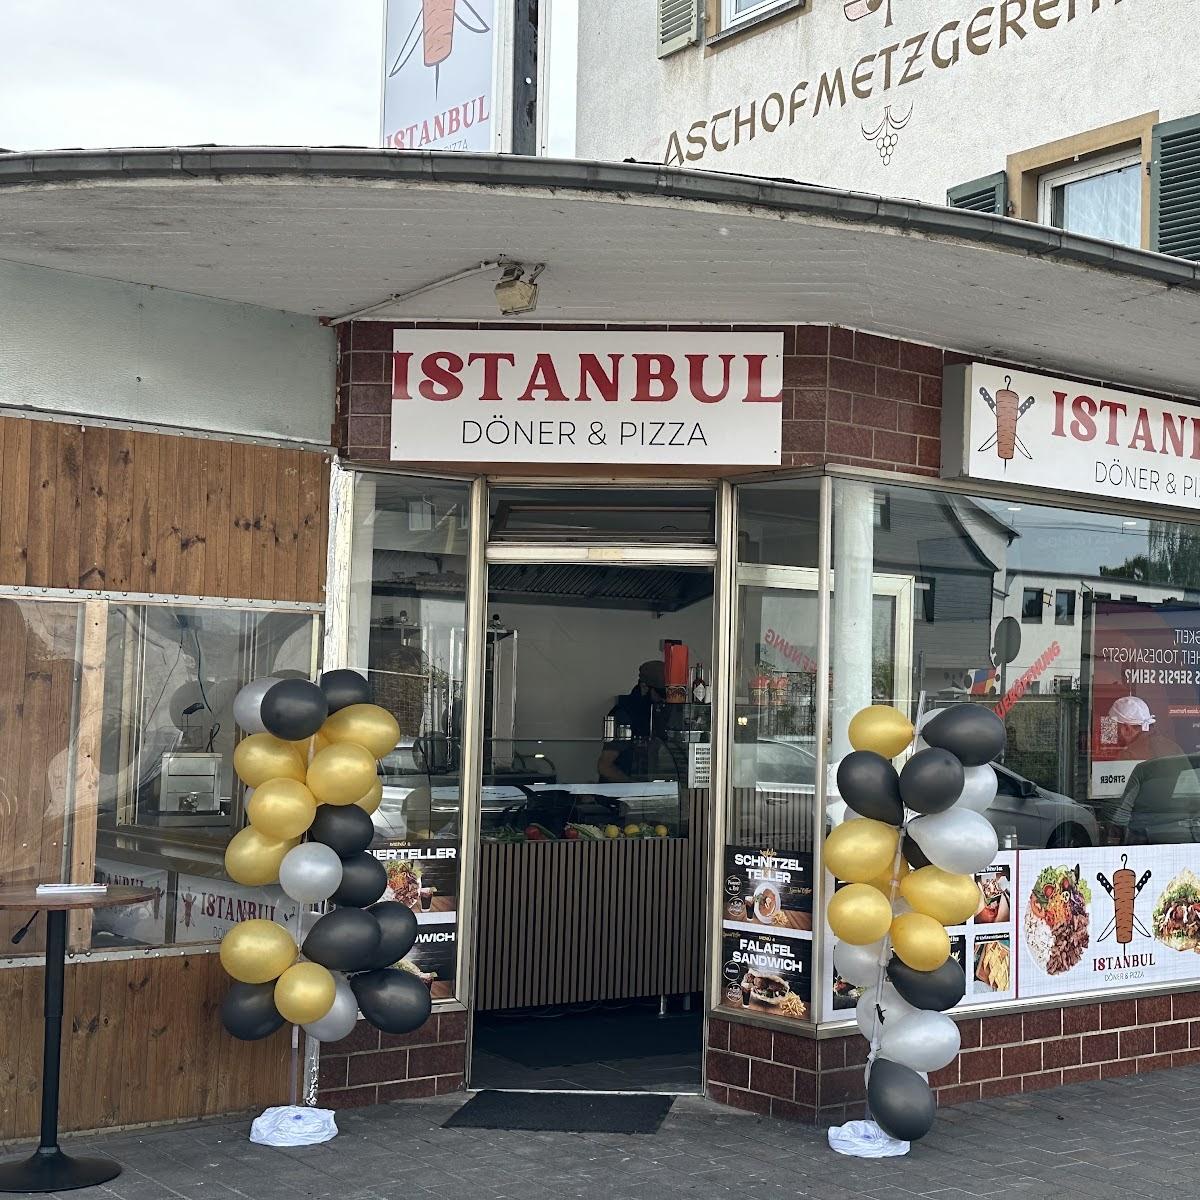 Restaurant "Istanbul Döner Kebap & Pizza" in Geisenheim